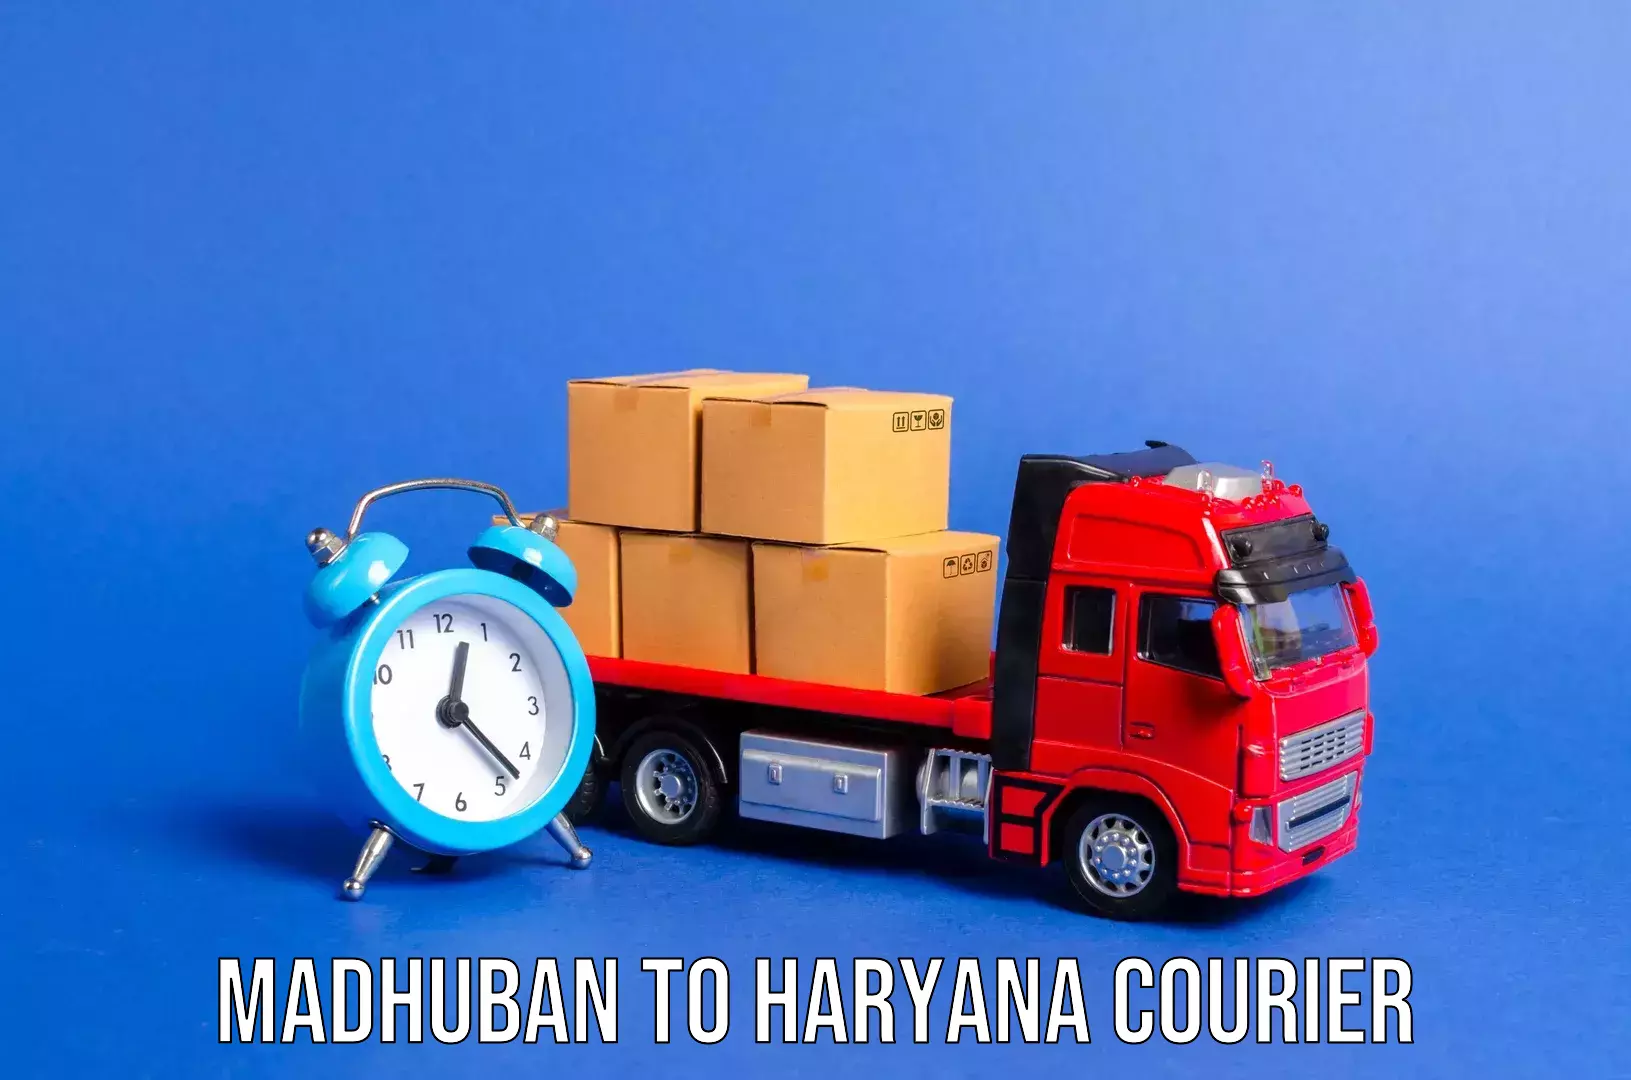 Luggage shipping discounts Madhuban to Chaudhary Charan Singh Haryana Agricultural University Hisar